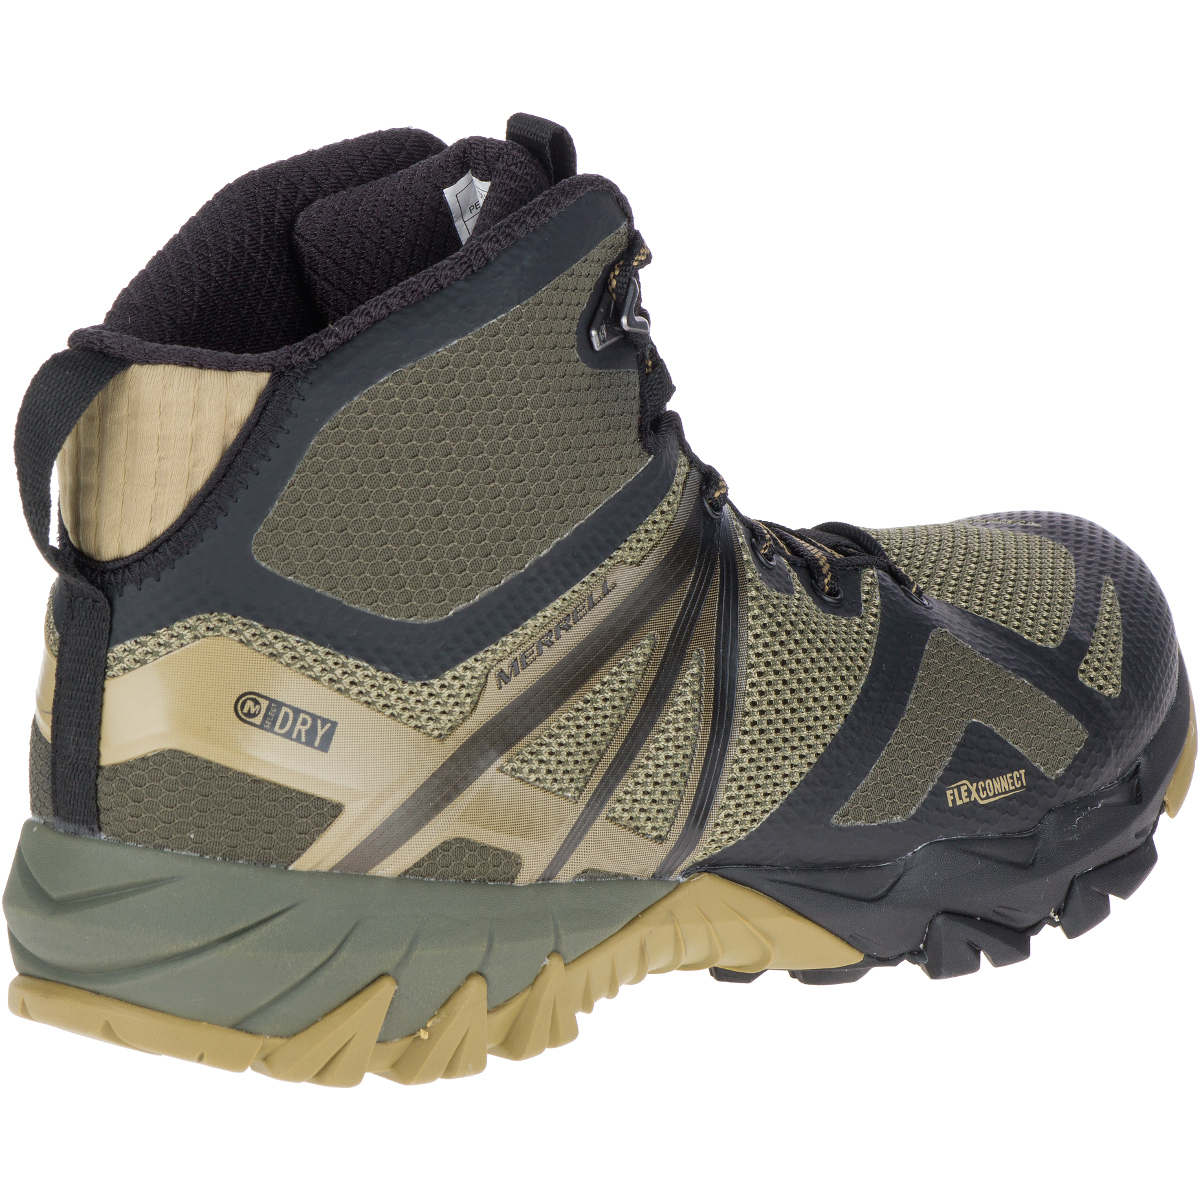 merrell men's mqm flex mid waterproof hiking boots